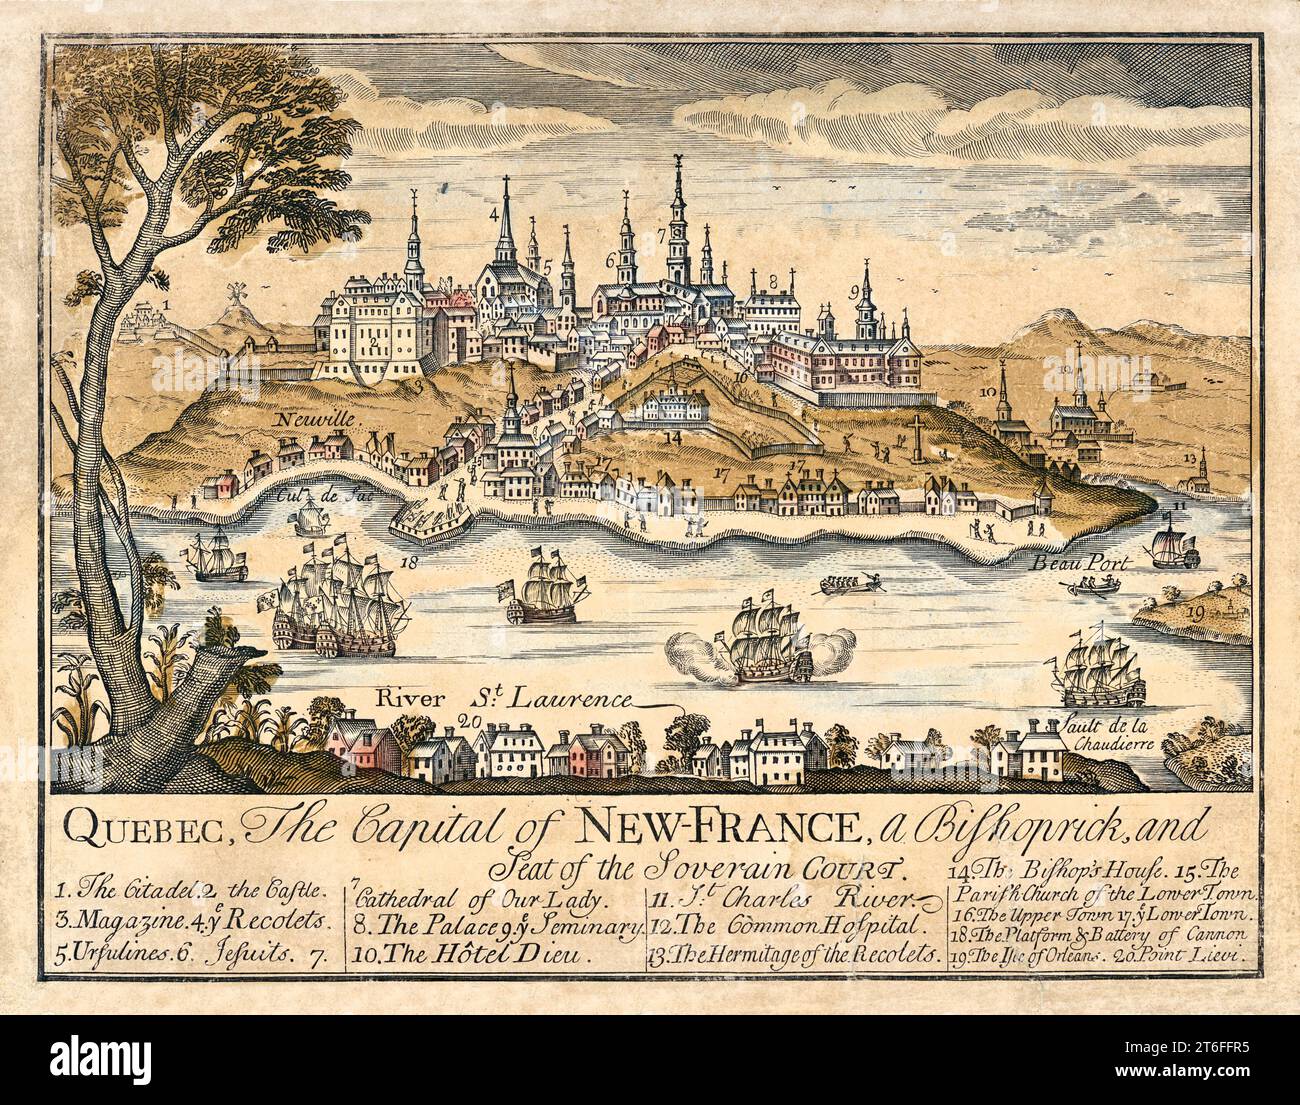 Alte Sicht auf Quebec, die Hauptstadt von Neufrankreich. Von Fer und Chéreau, publ. Im Jahr 1759 Stockfoto